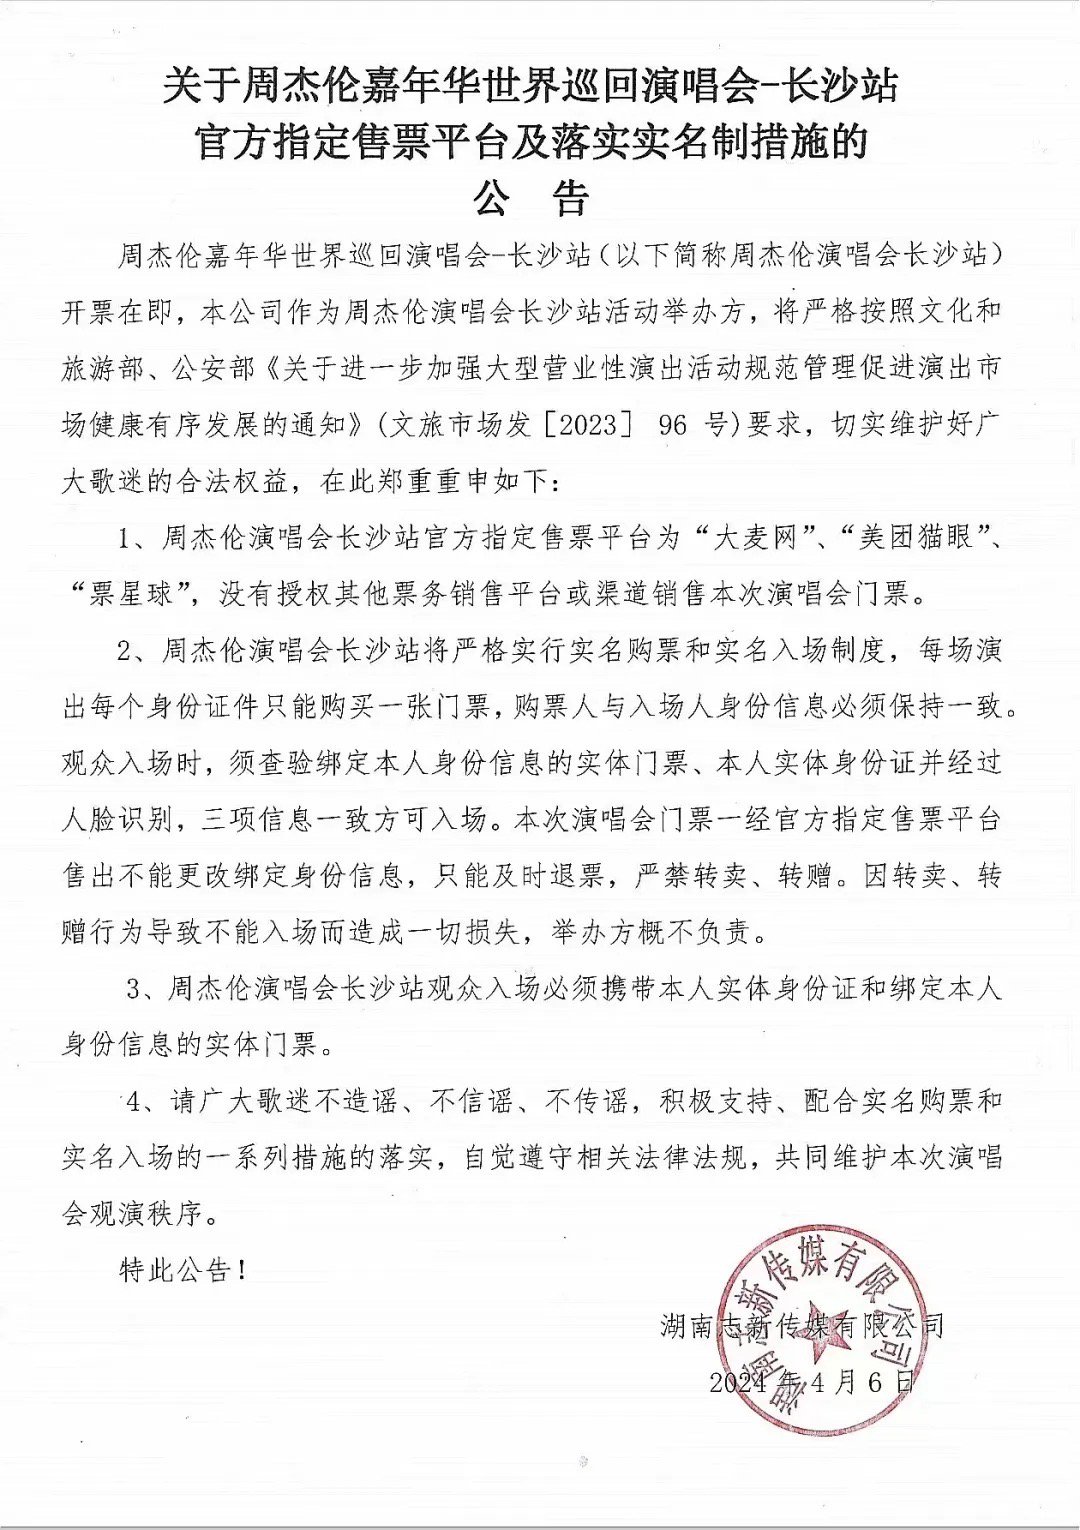 湖南志新传媒有限公司4月6日发布的公告。